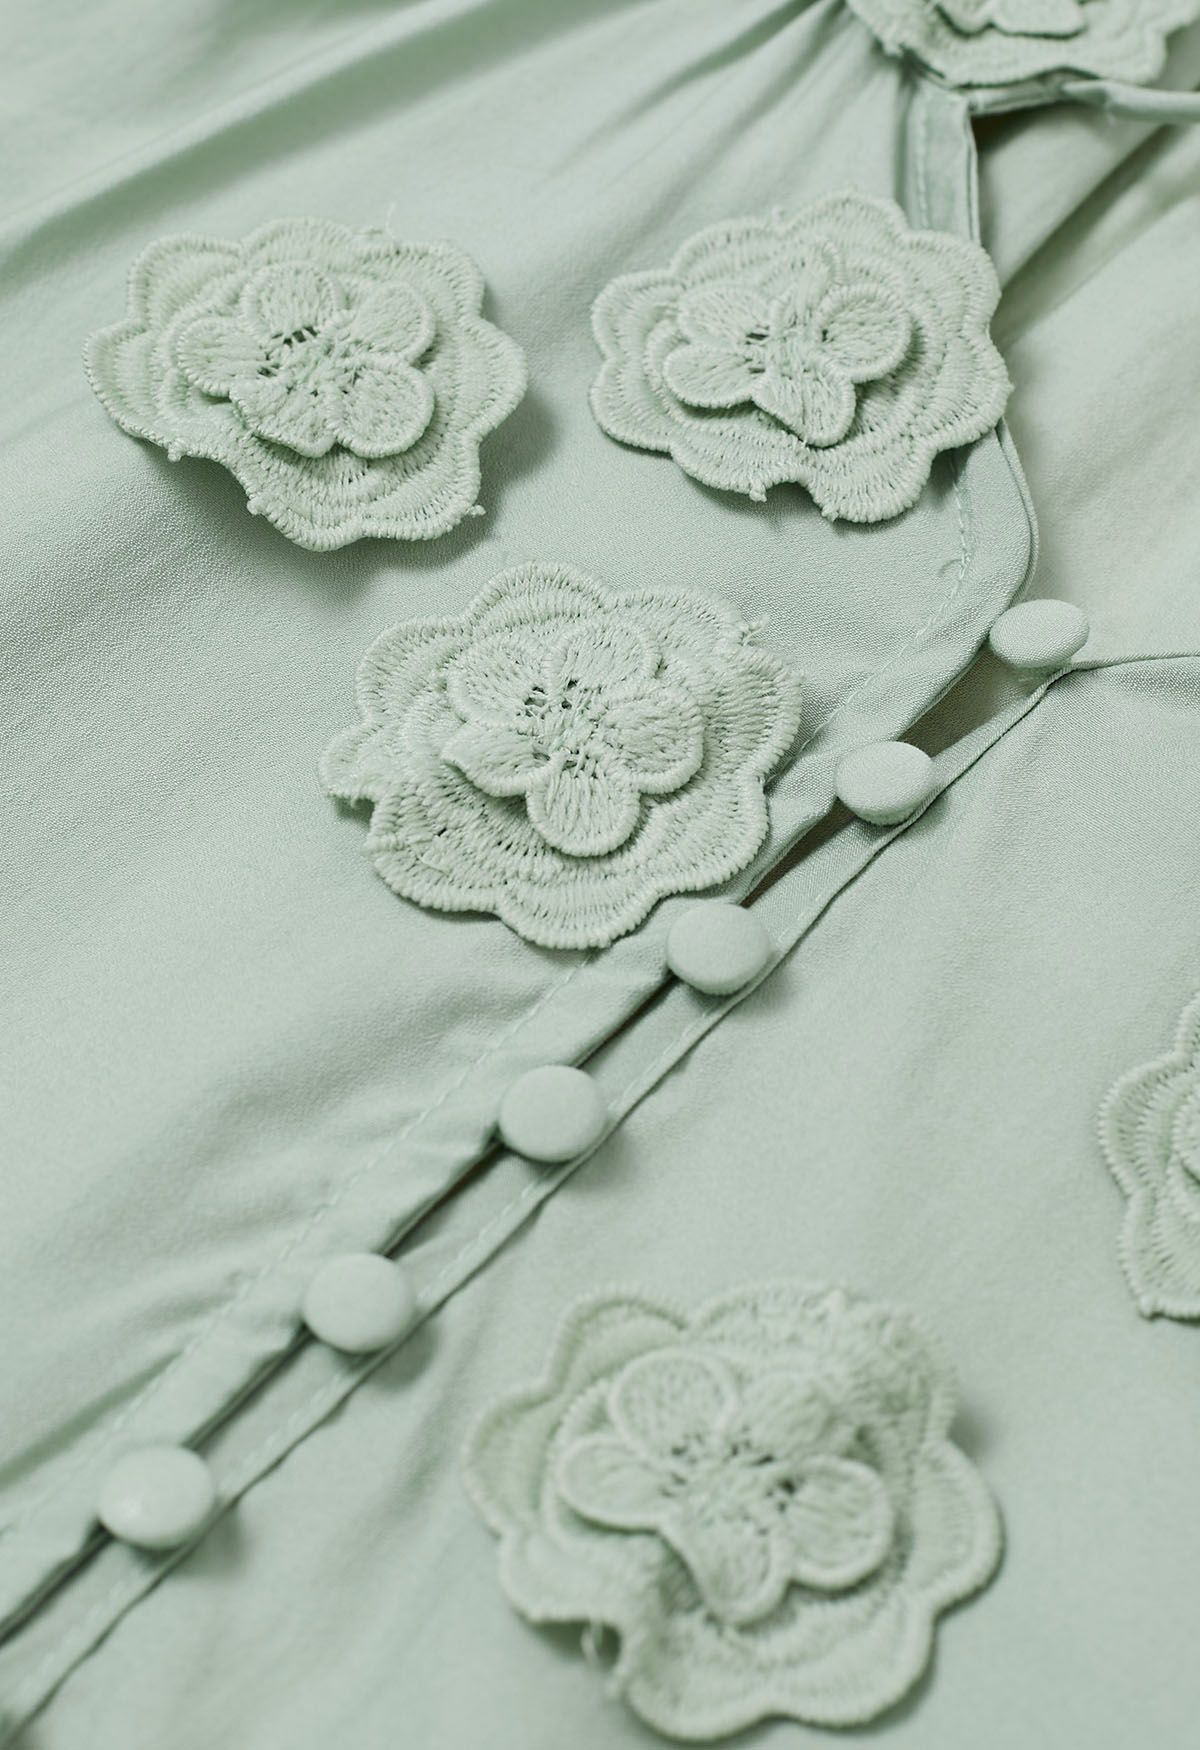 Romantisches Blüten-Hemd mit 3D-Spitzenblumen und Knöpfen in Mint